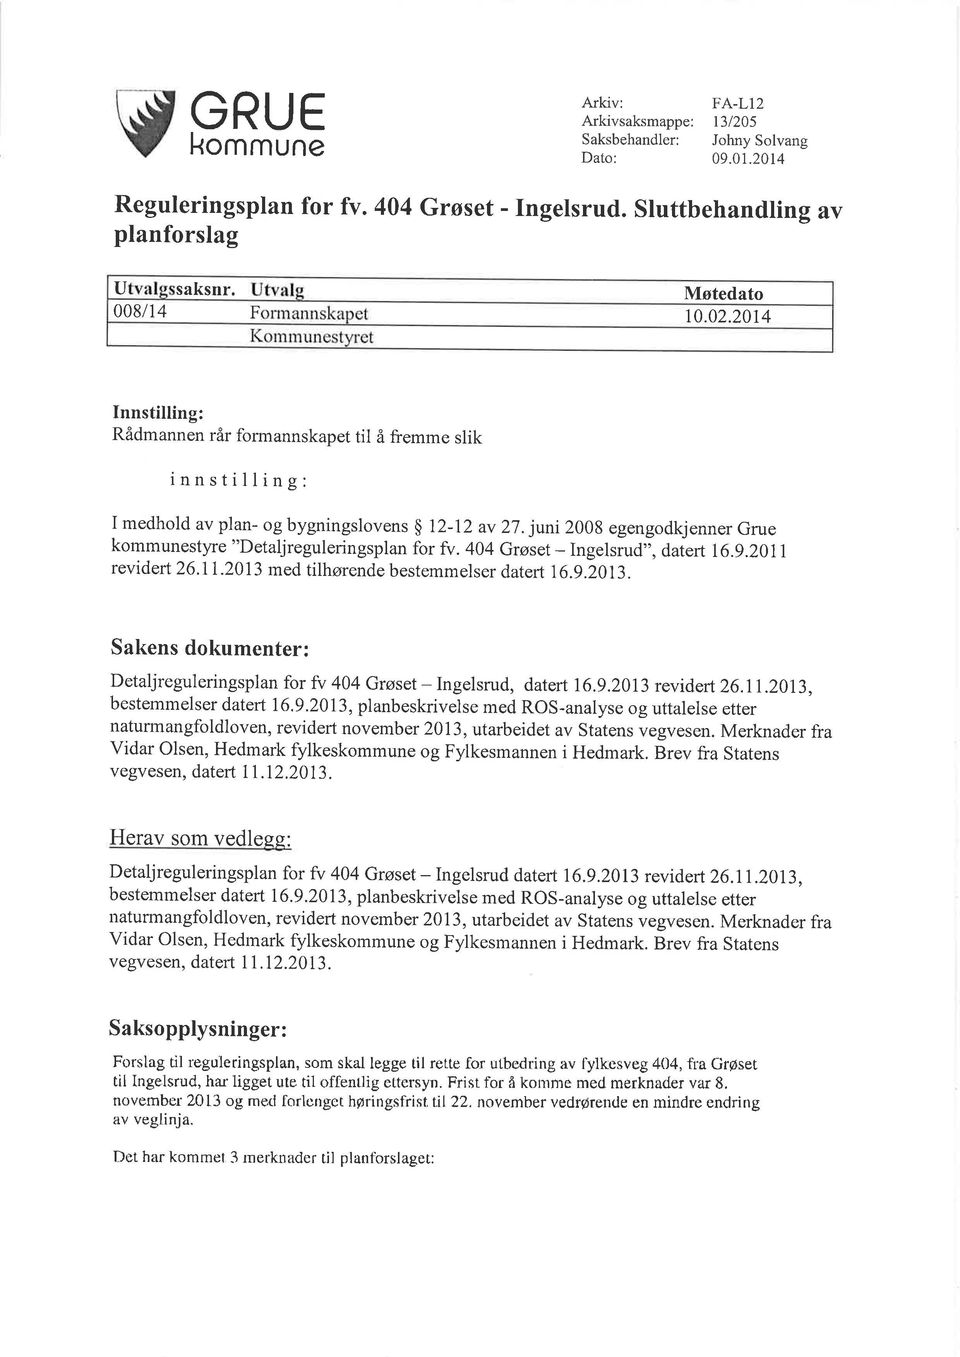 juni 2008 egengodkjenner Grue kommunestyre "Detaljreguleringsplan for fv.4o4 Grøset - Ingelsrud';, datert 16.g.201I revidert 26.1r.2013 